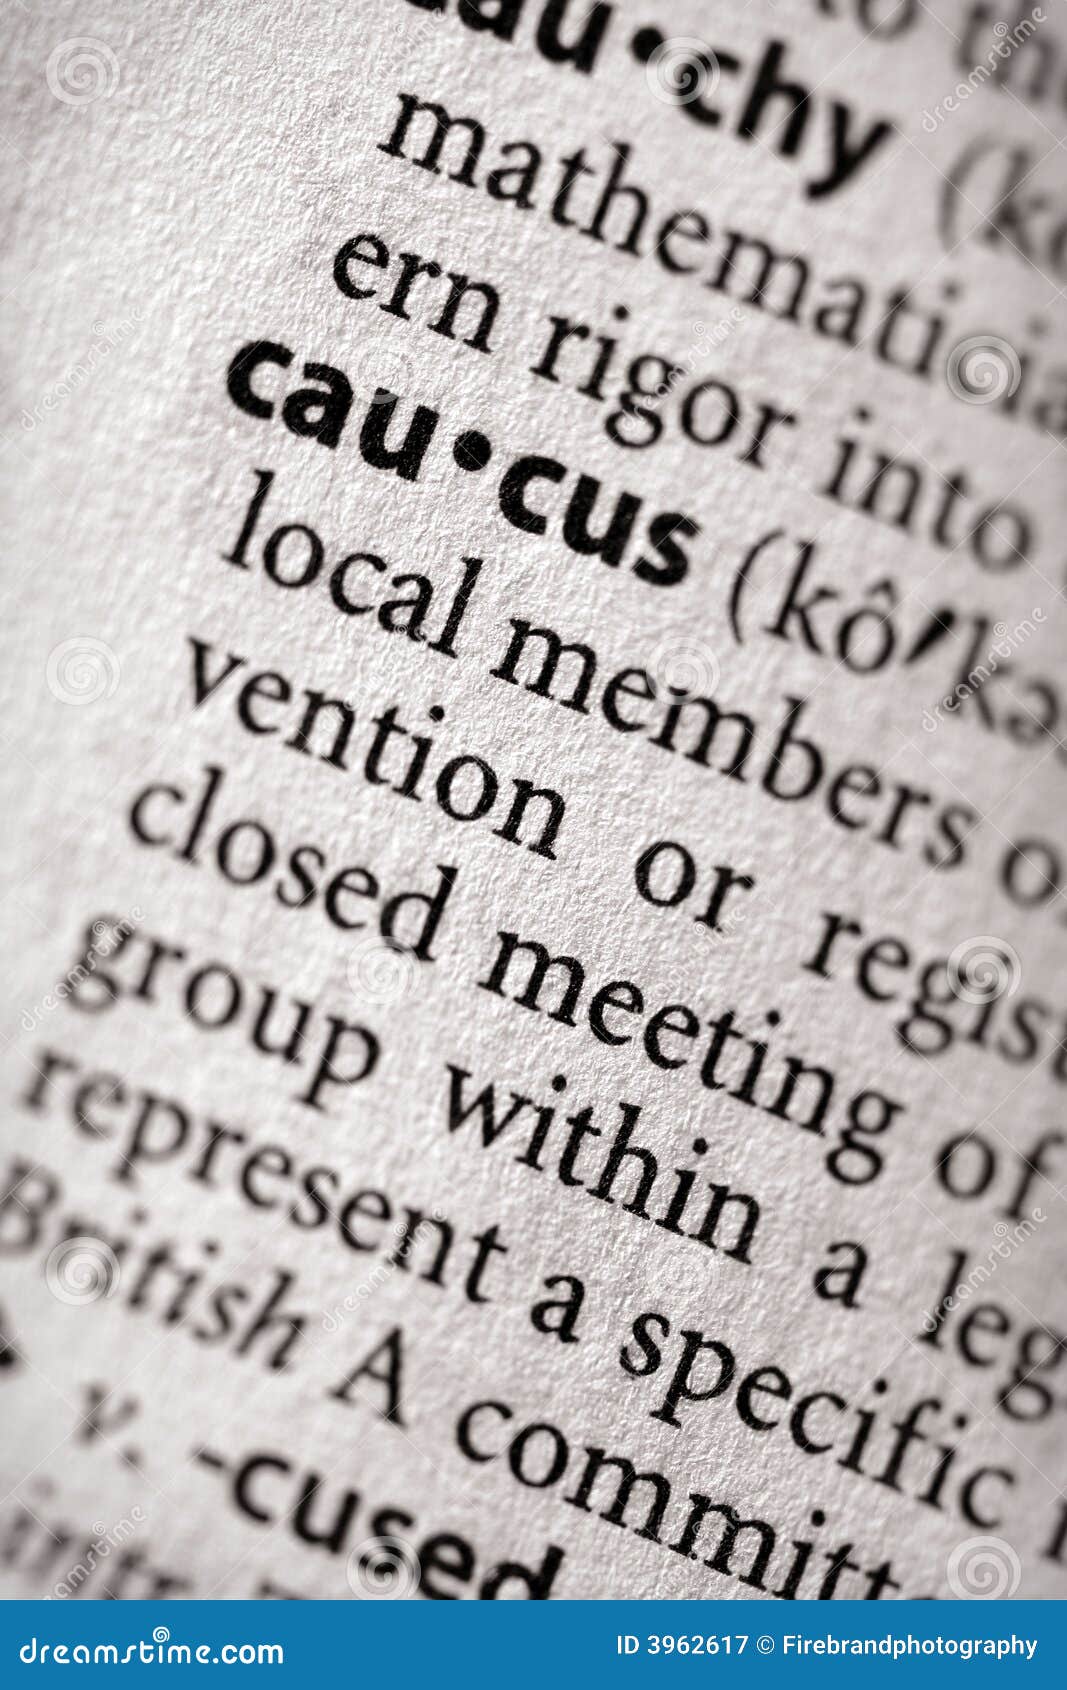 dictionary series - politics: caucus